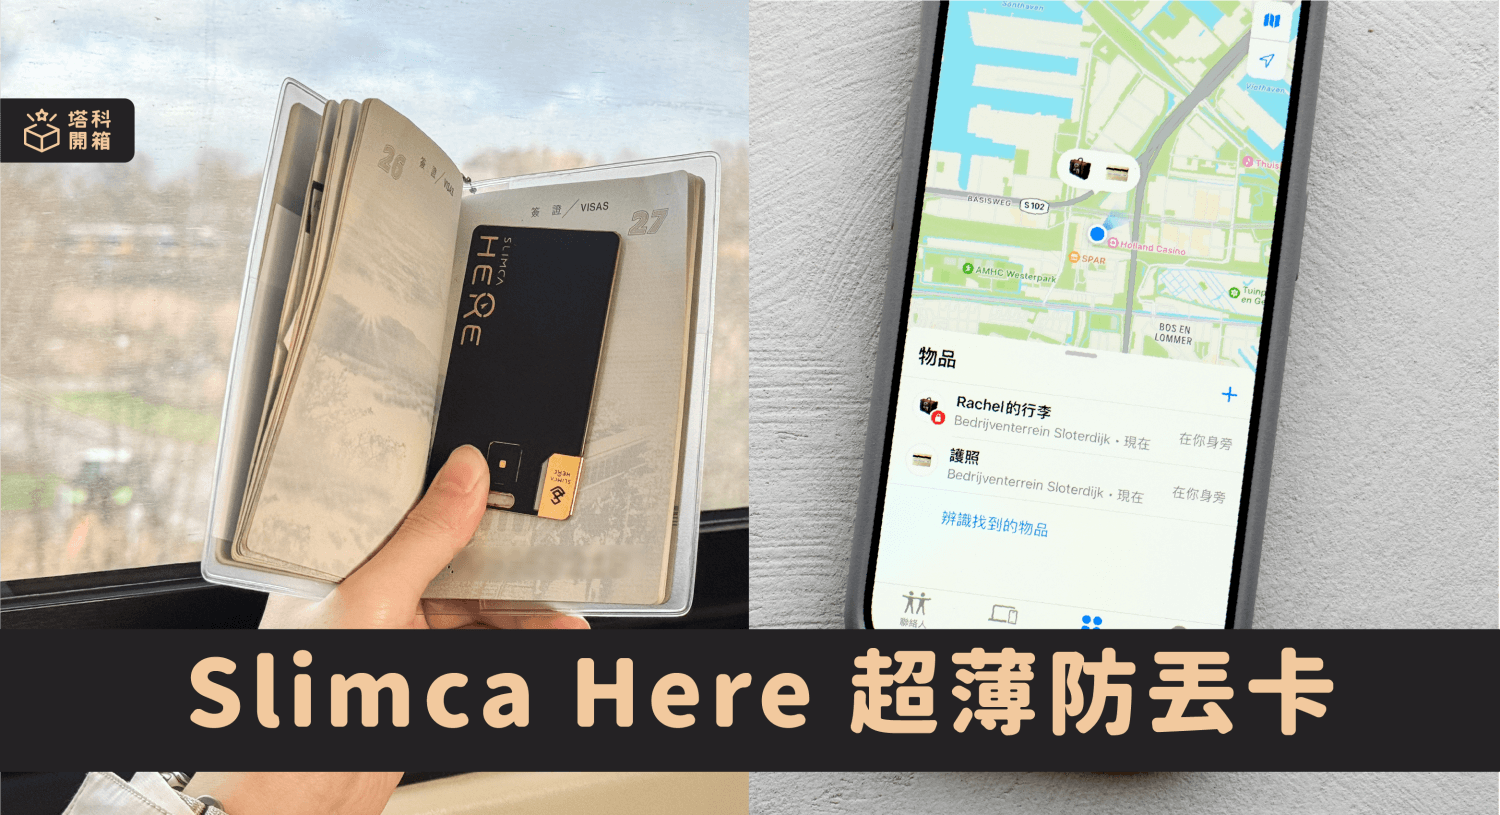 【開箱】Slimca Here 超薄防丟卡：0.9mm 厚度輕鬆放在護照或錢包追蹤定位、接收離身通知